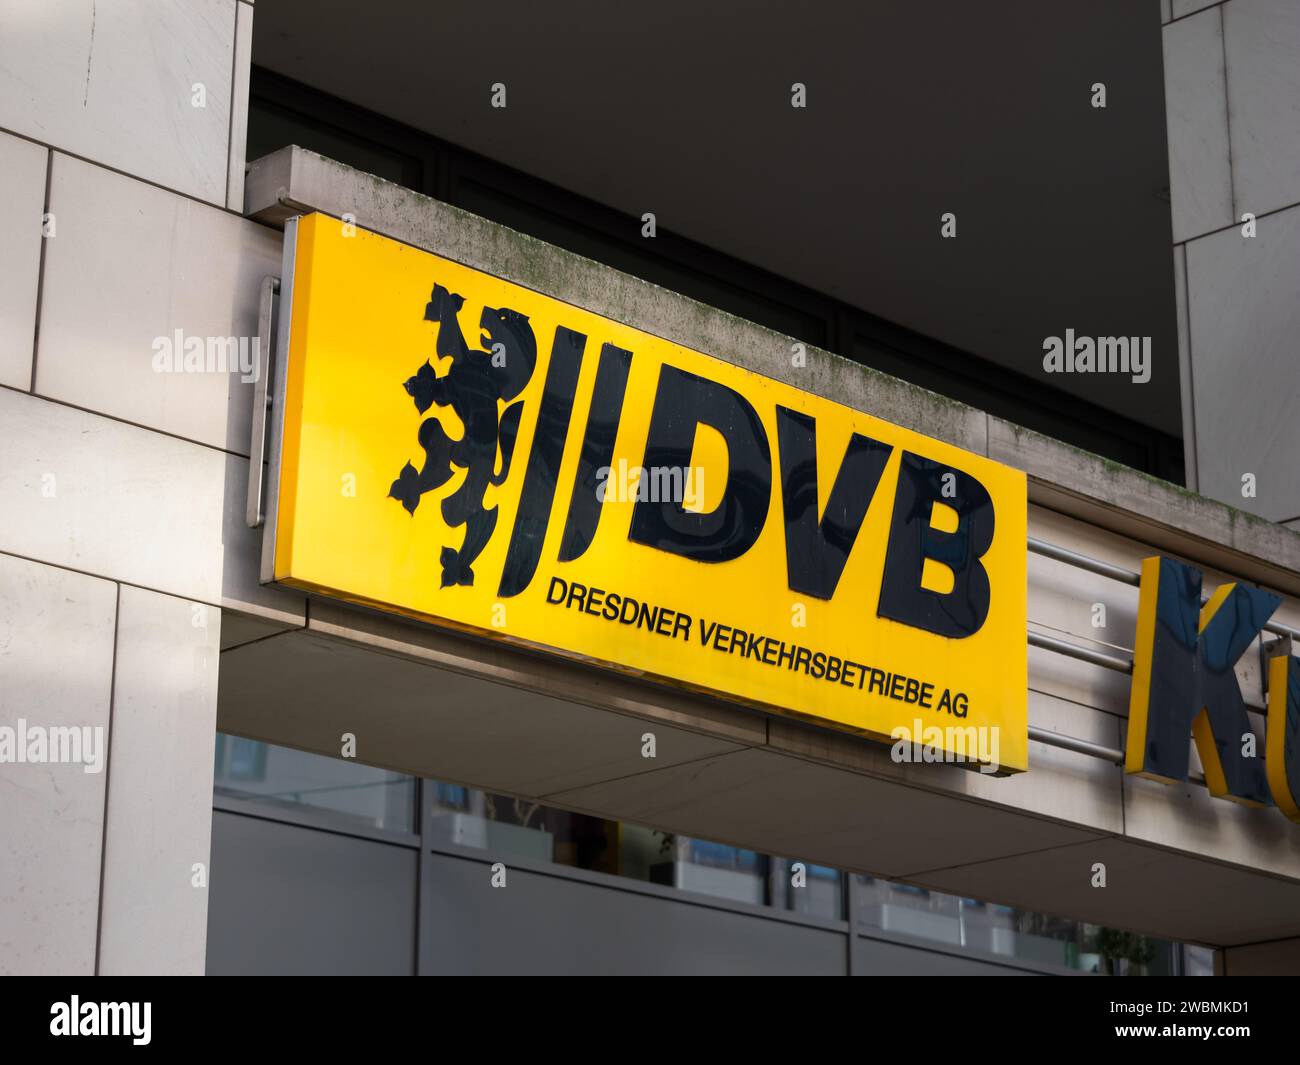 Logo DVB della Dresdner Verkehrsbetriebe AG, che è il servizio di trasporto pubblico della città in Sassonia e un grande datore di lavoro. Foto Stock